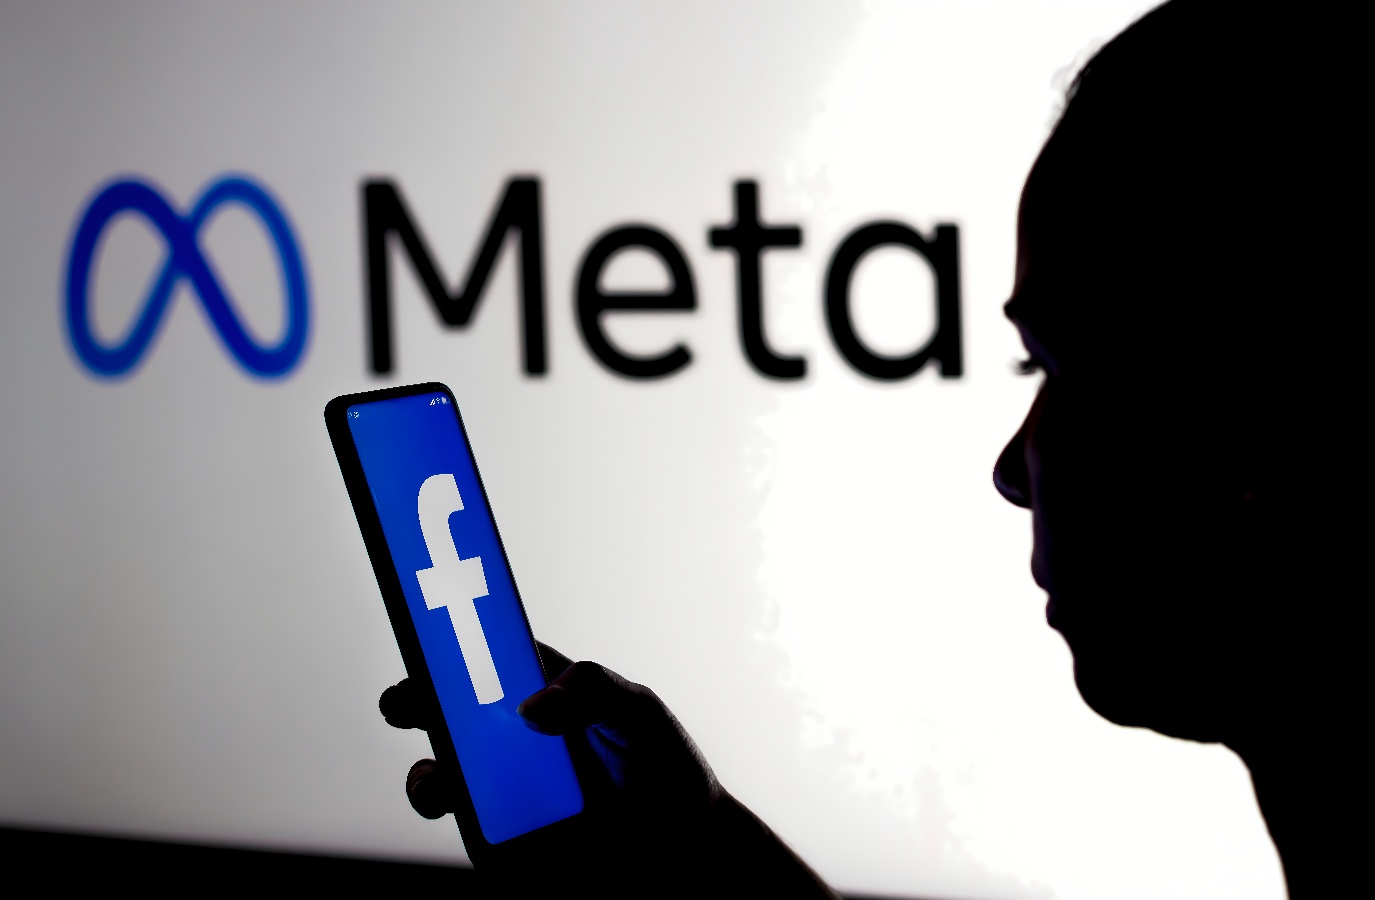 图片展示了一位剪影人物手持手机，手机屏幕上显示Facebook的标志，背景是发光的“Meta”字样。